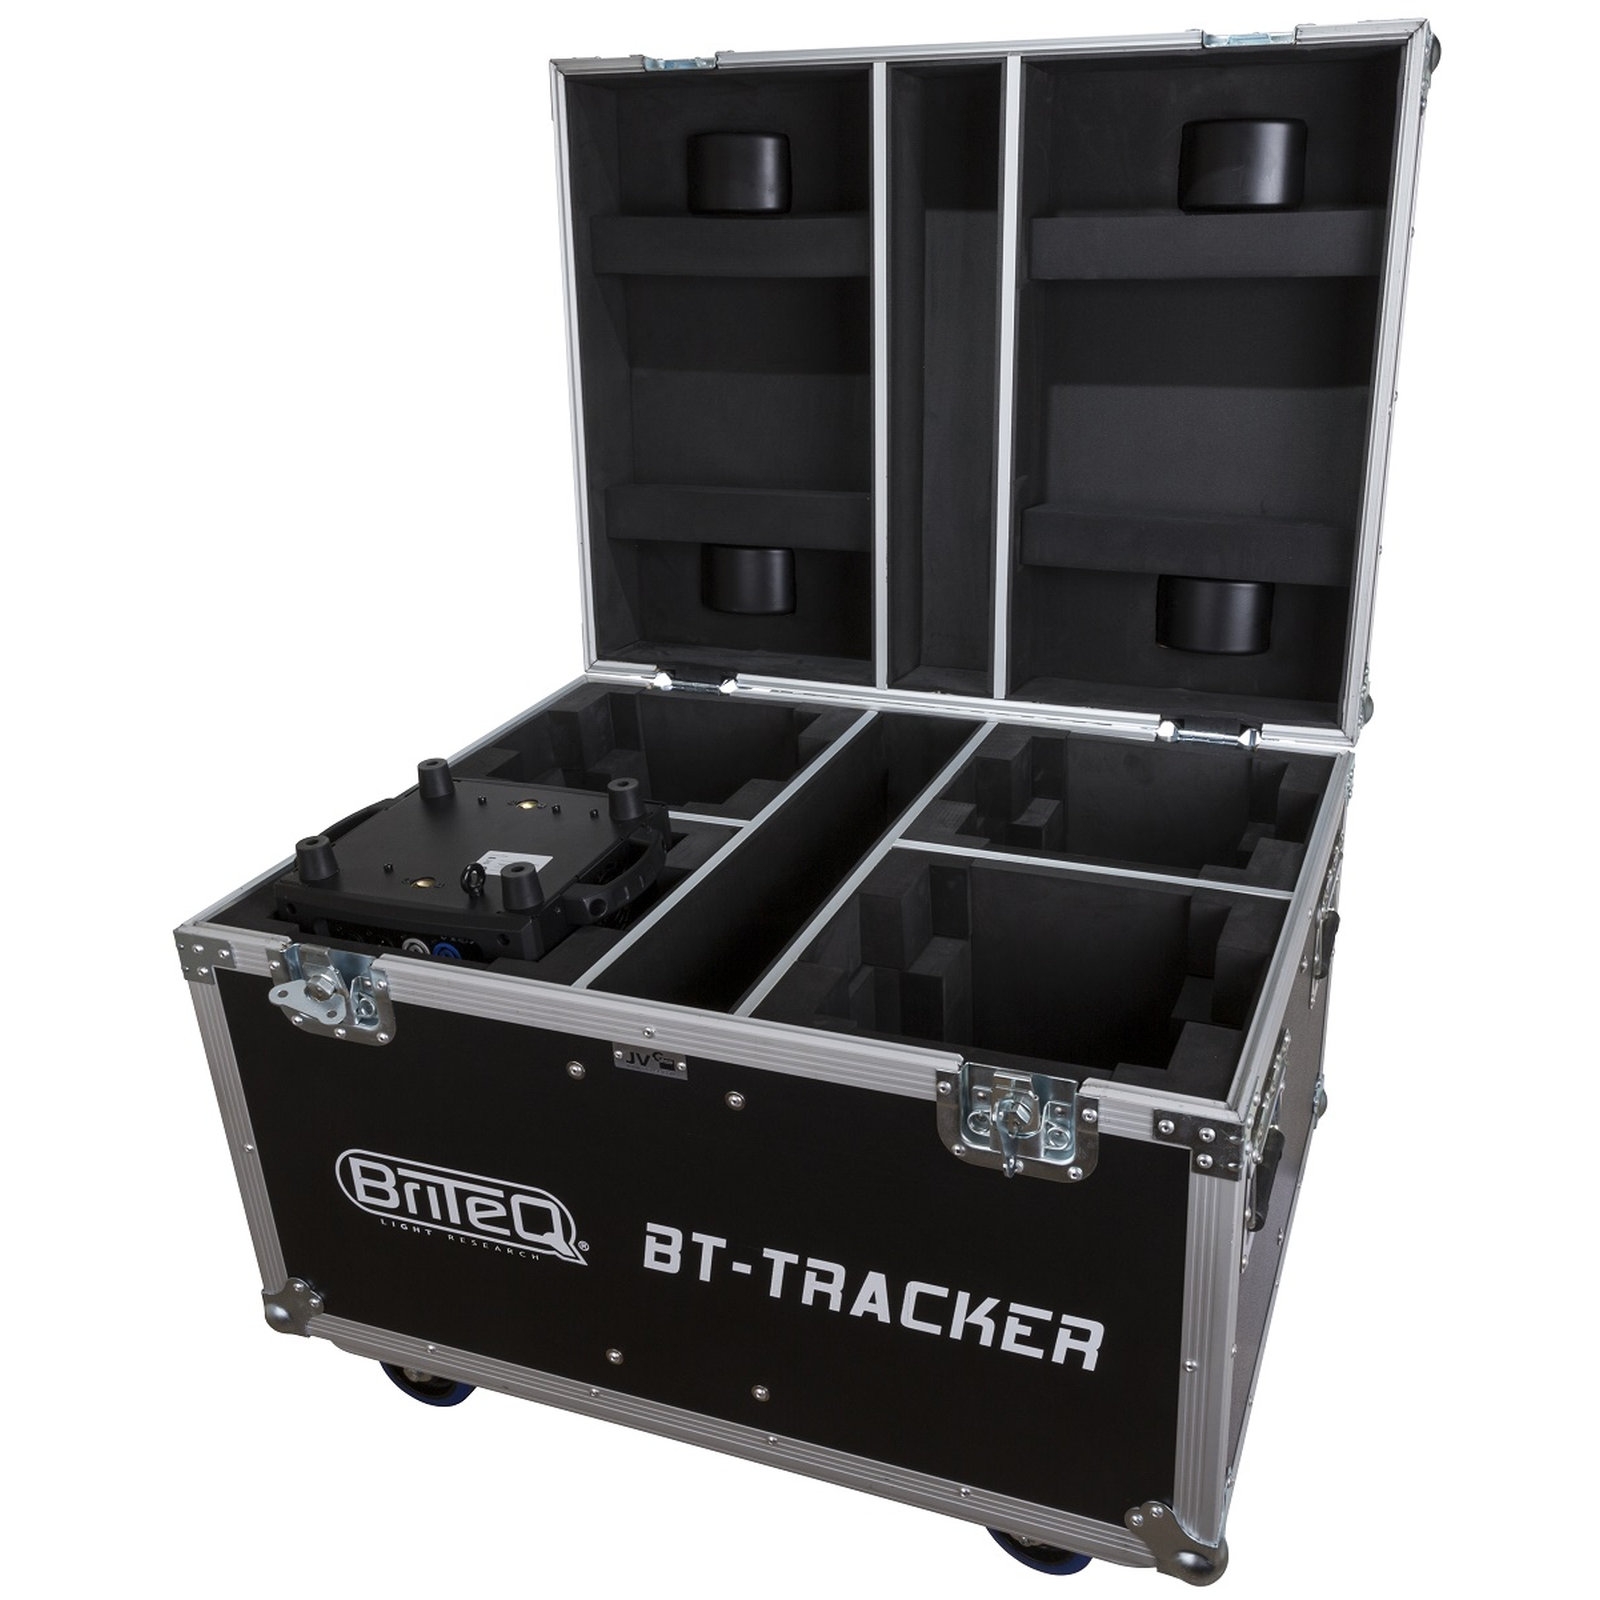 BRITEQ Flightcase für 4x BT-TRACKER